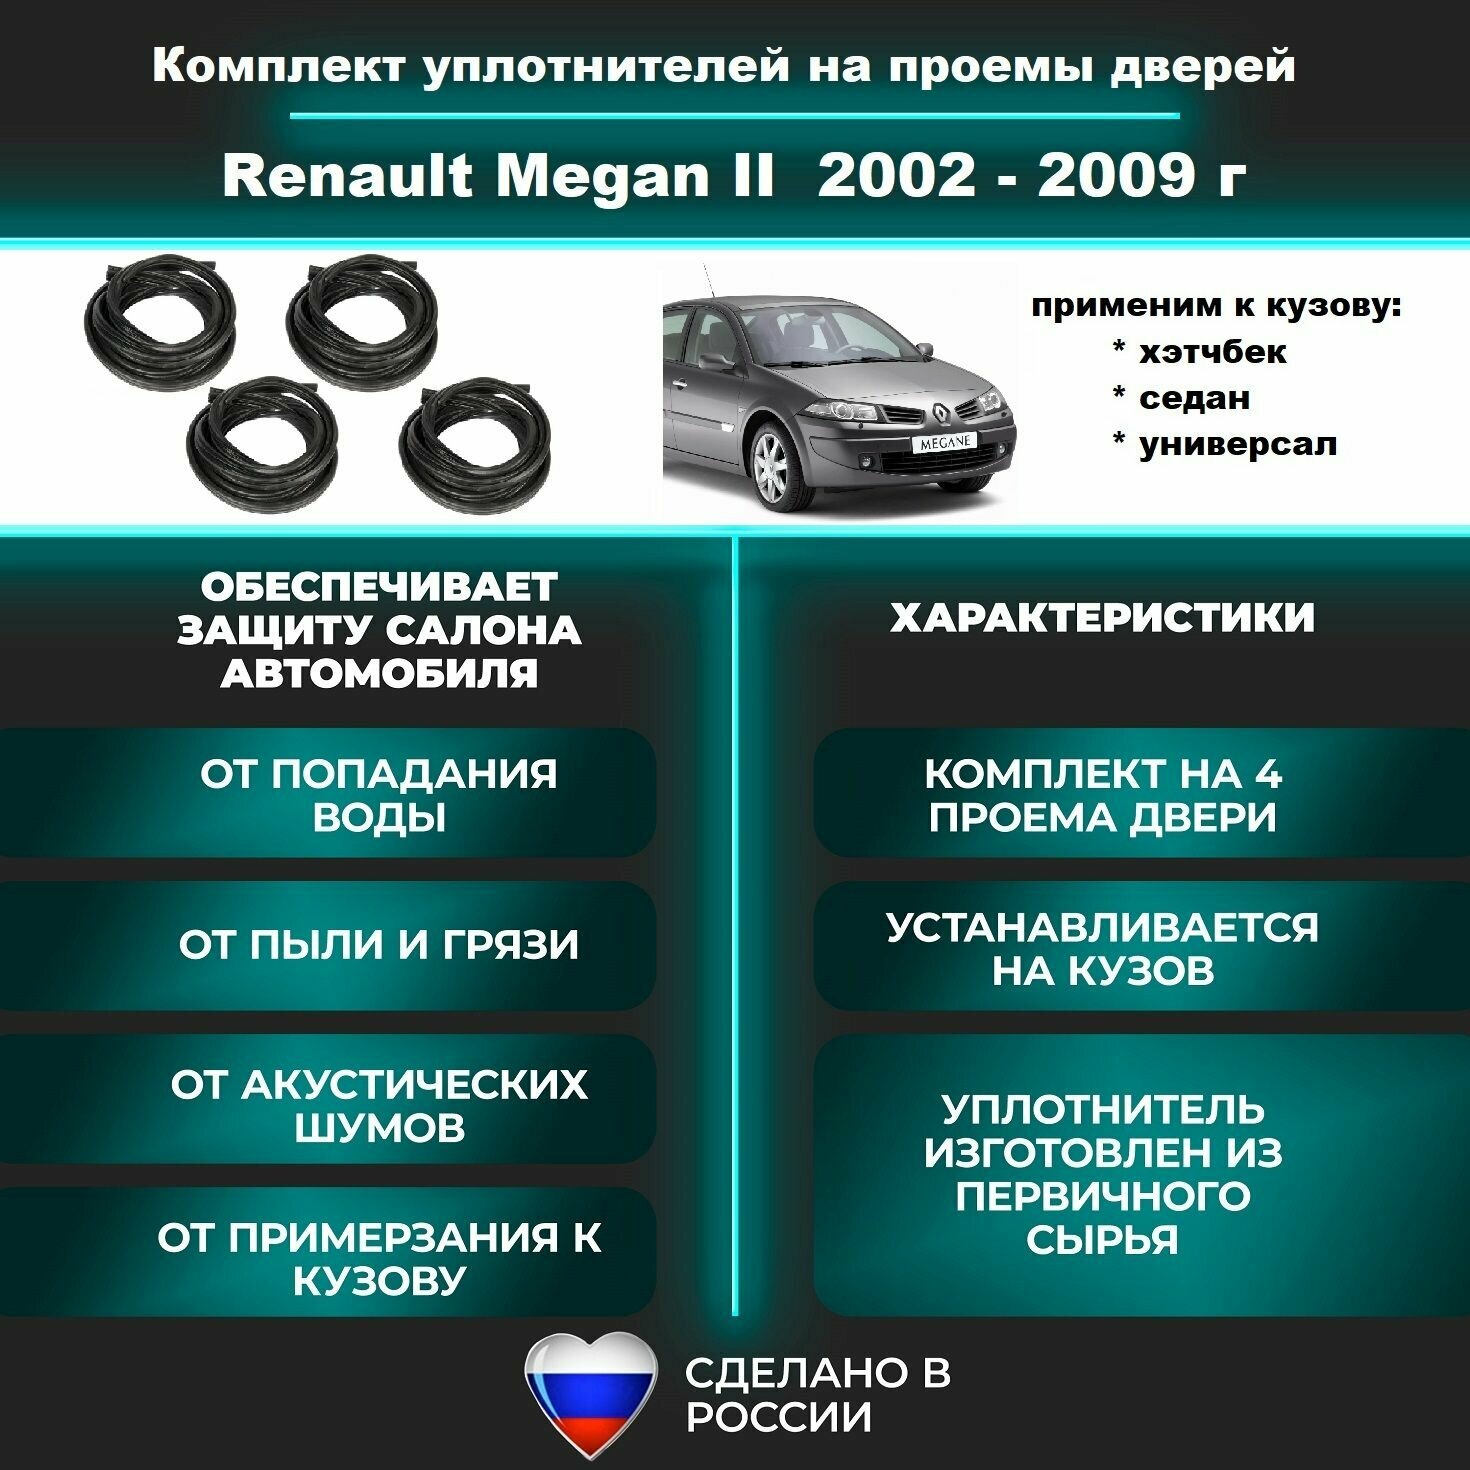 Комплект уплотнителей дверей на Renault Megan II 2002-2009 г / Рено Меган 2 резинка на 4 двери